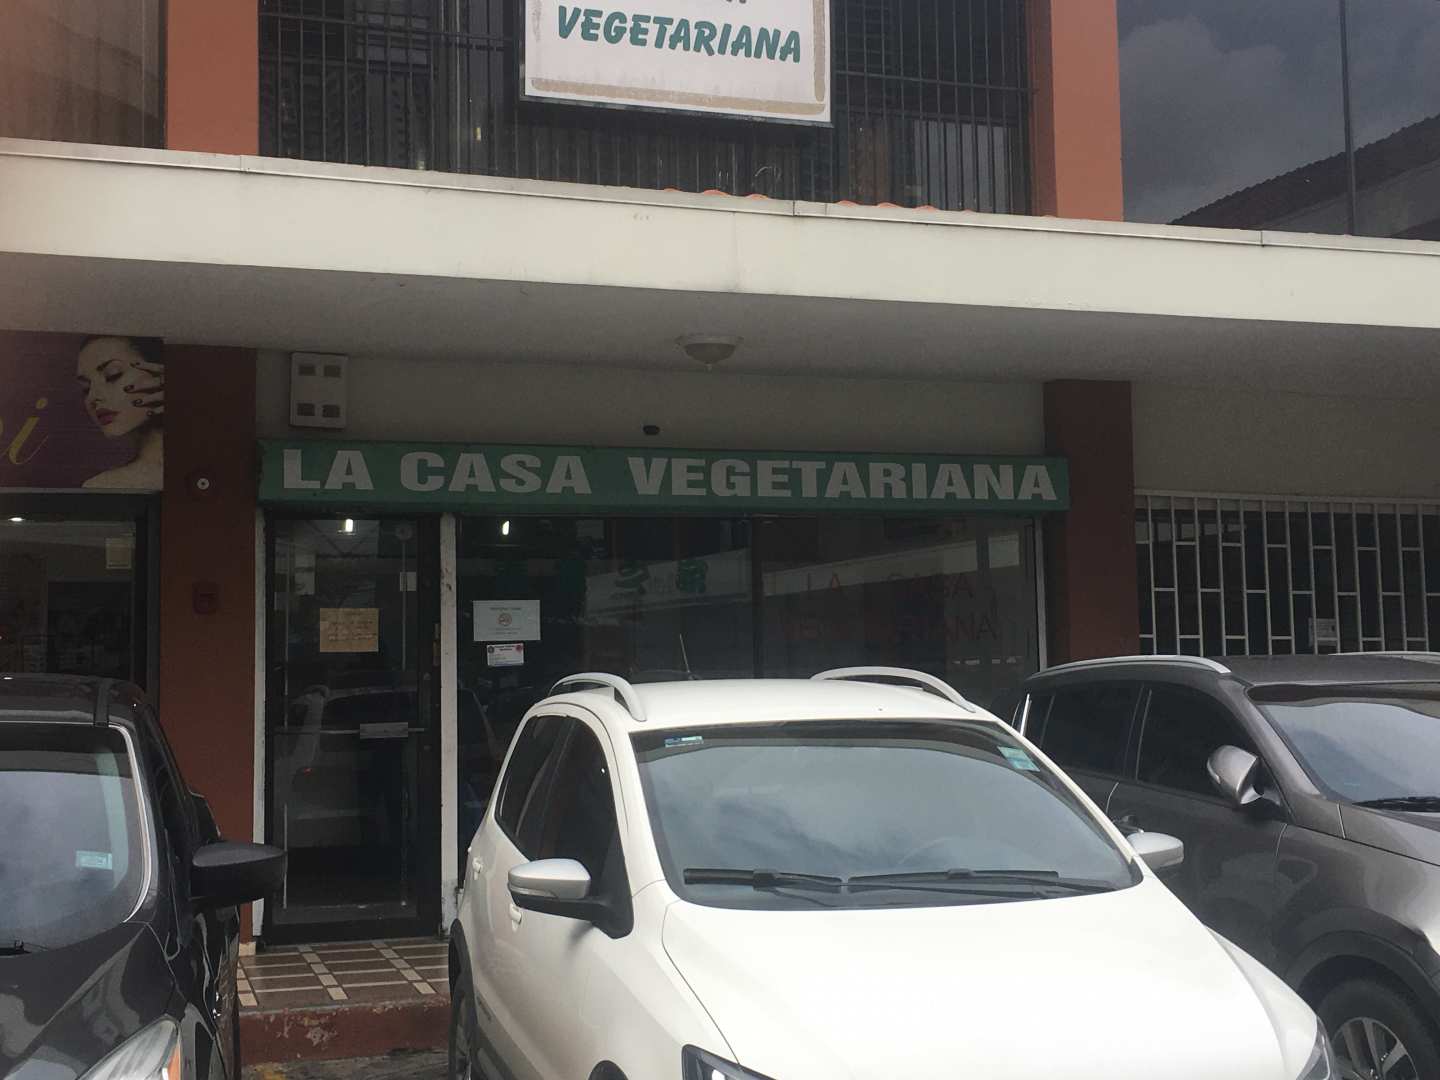 La Casa Vegetariana